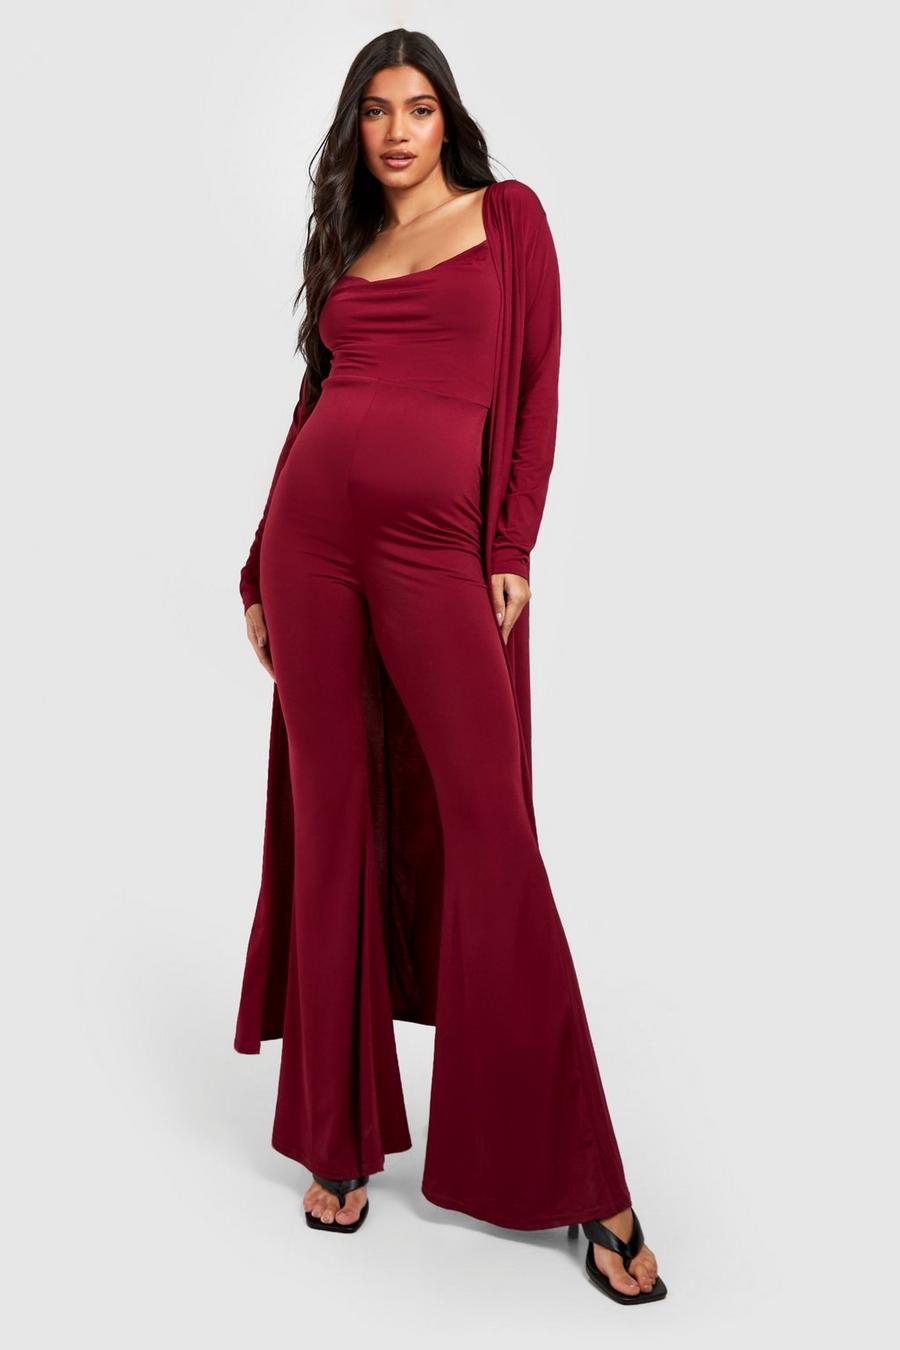 Robes de grossesse Damen Kleidung Umstandskleidung Overalls für Schwangere Kiabi Overalls für Schwangere 